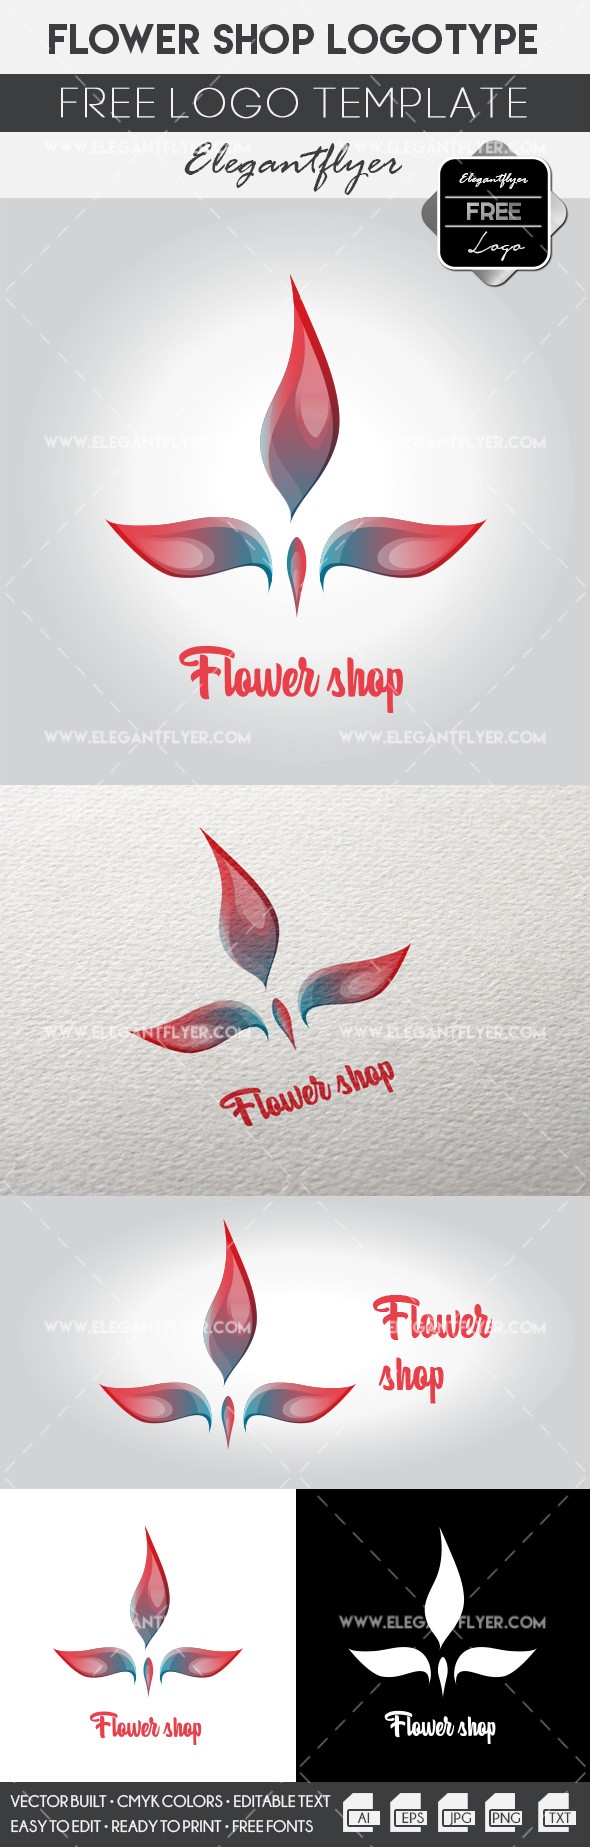 Tienda de flores by ElegantFlyer